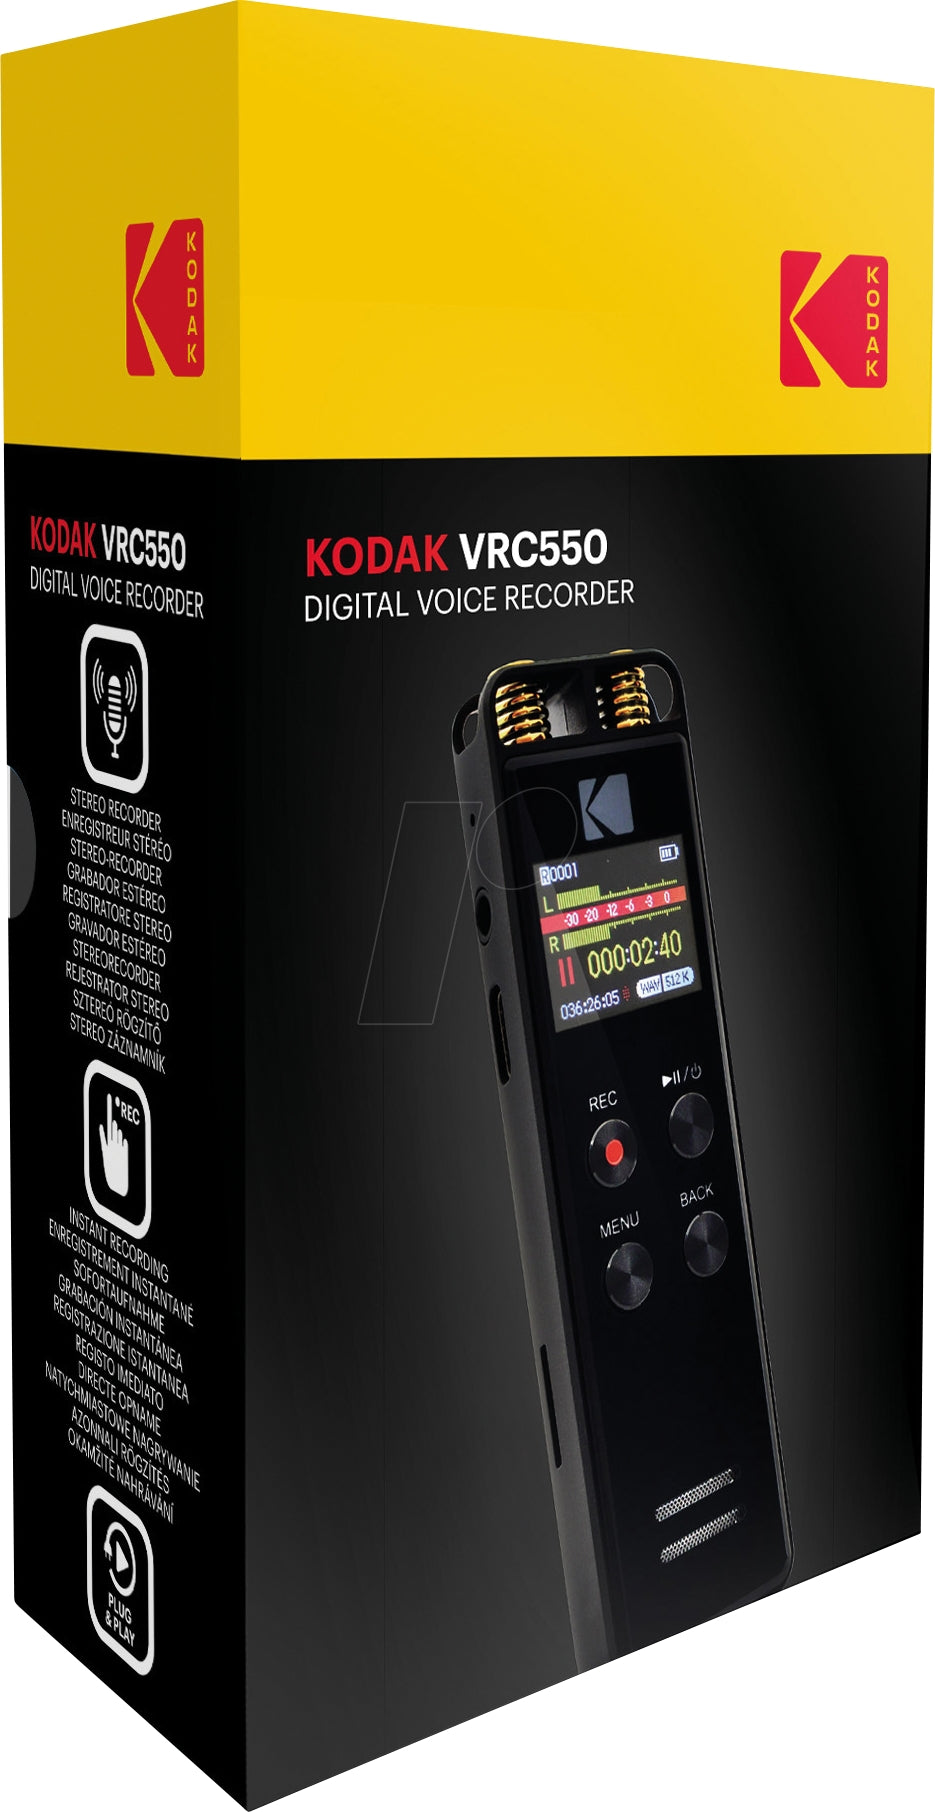 Digital Dictaphone for Stereo Recording Kodak VRC550, 8GB Memory